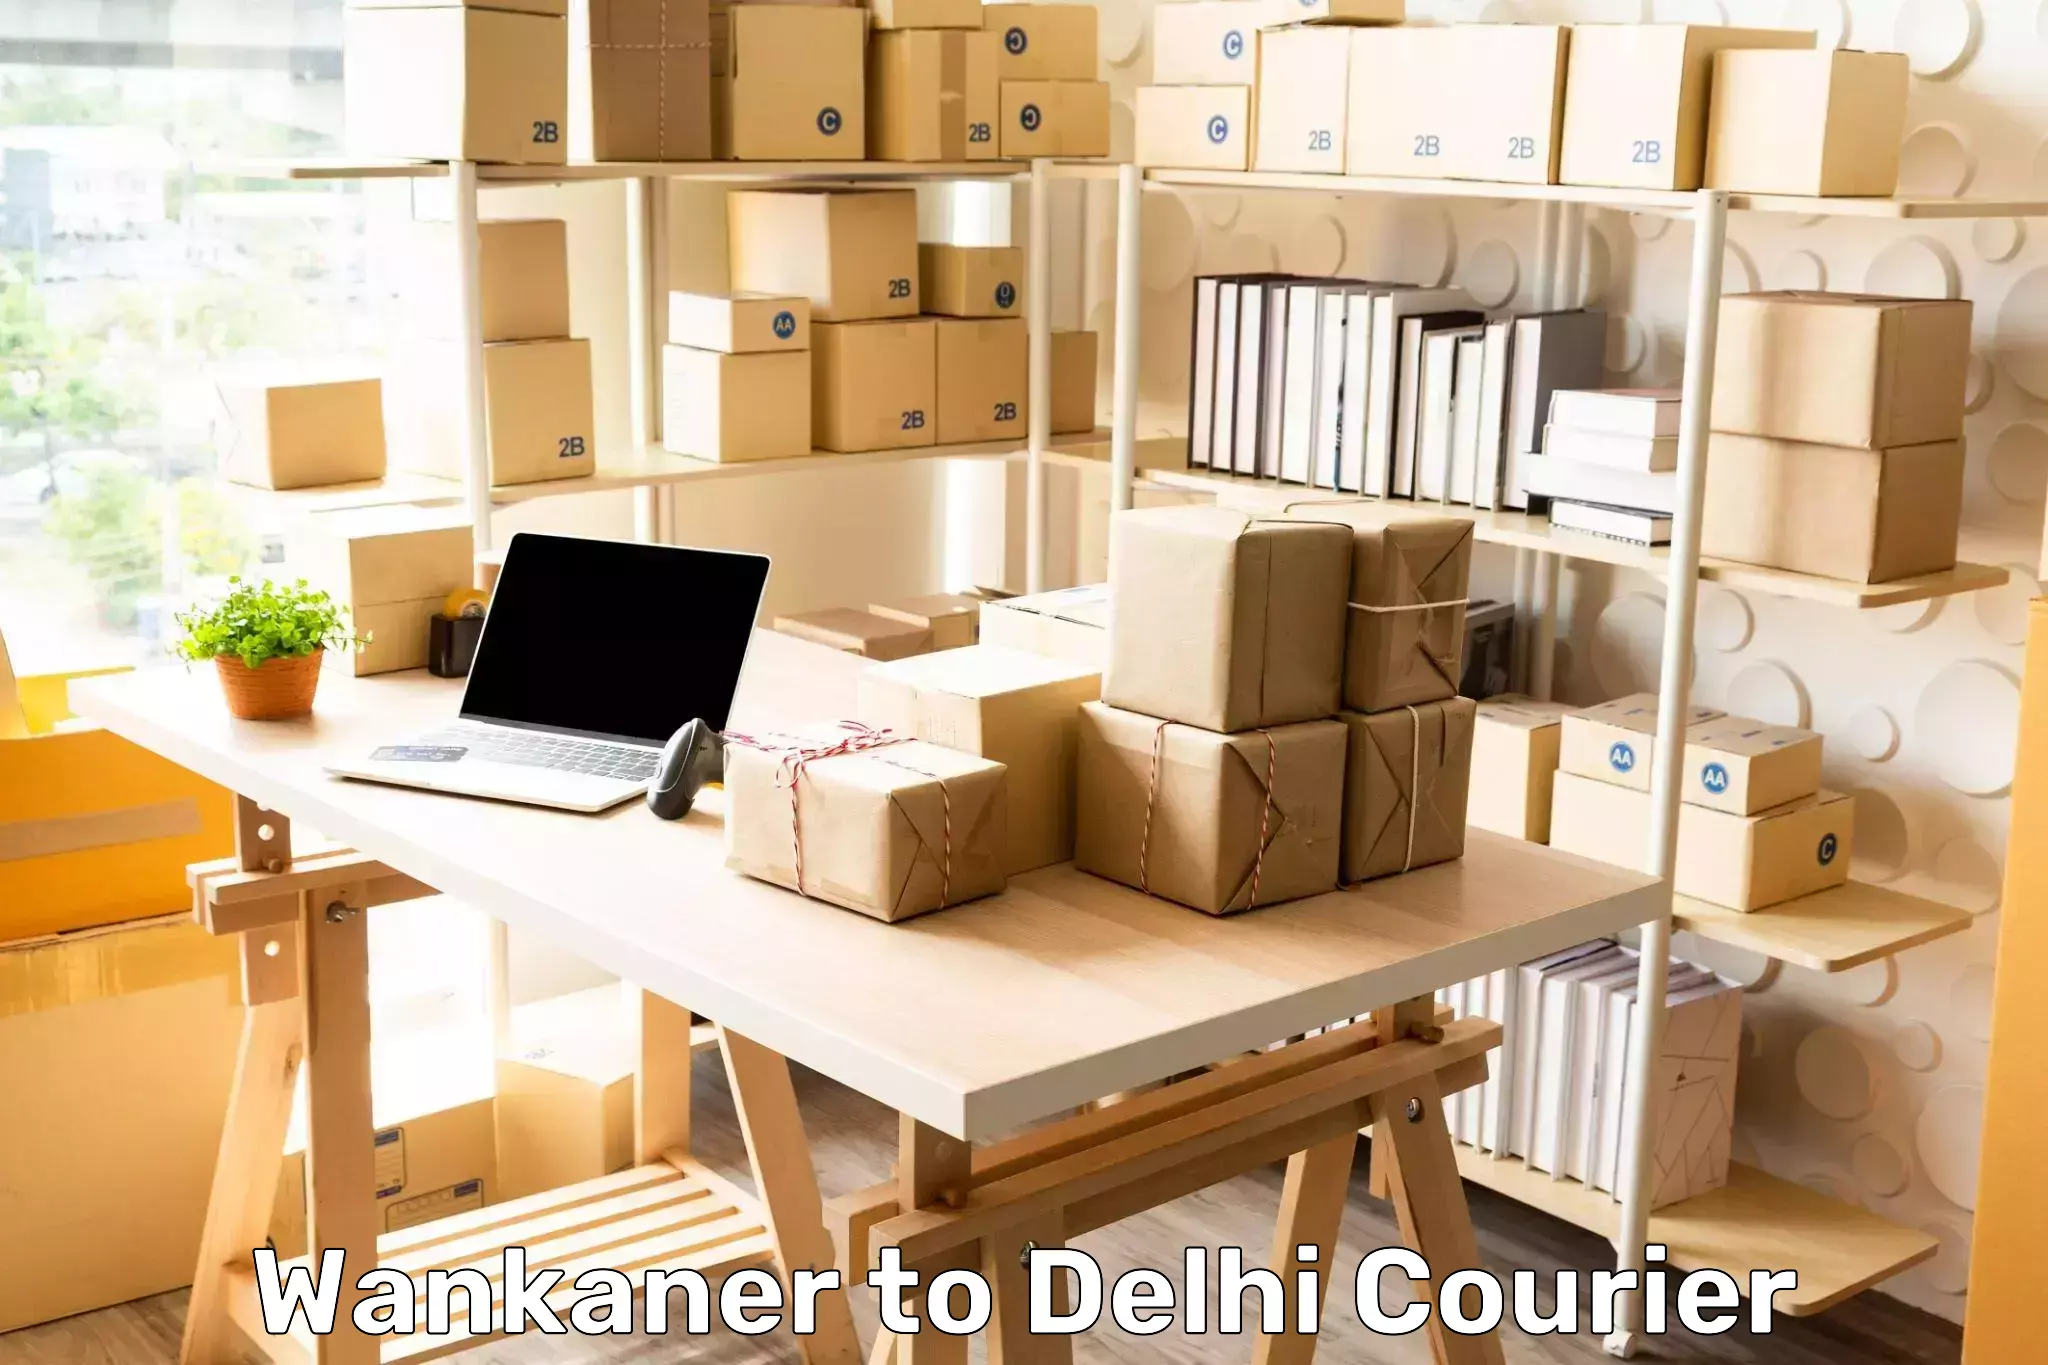 Cargo delivery service Wankaner to Delhi